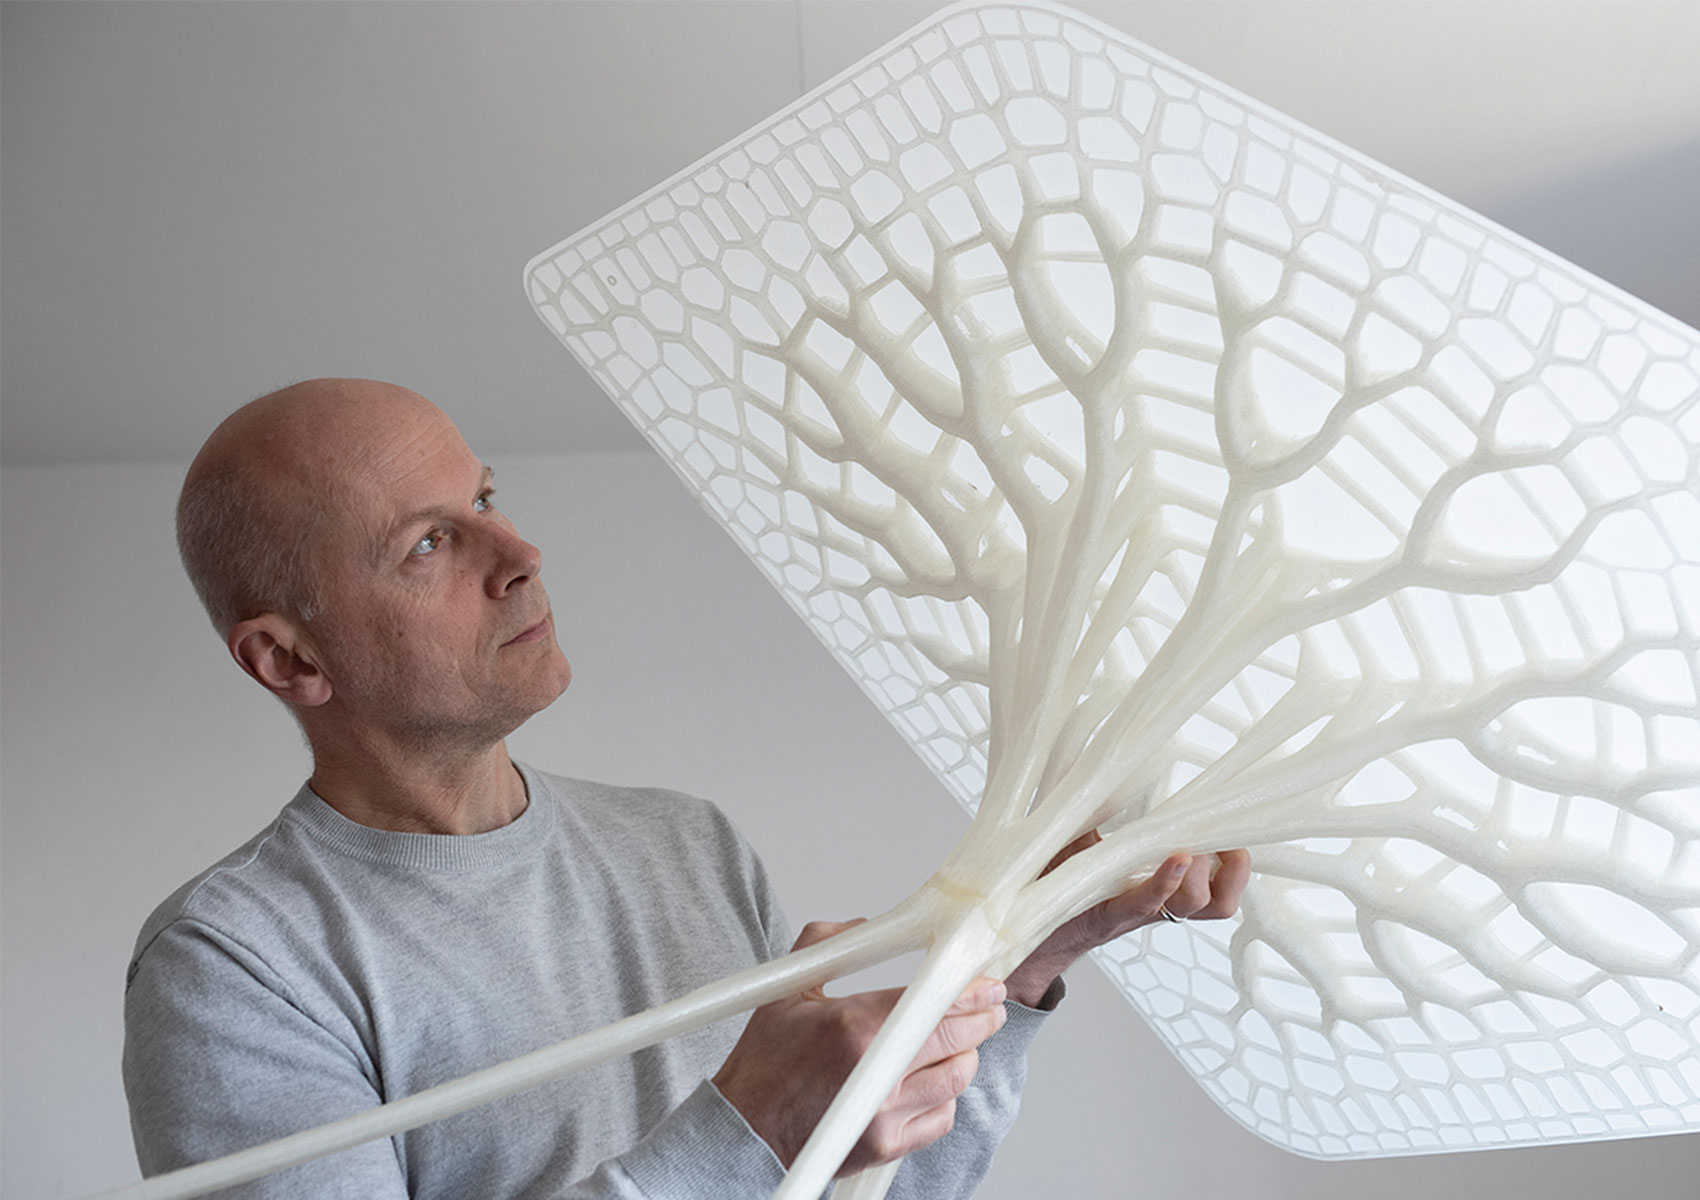 Der britische Architekt Michael Pawlyn, der für seine Arbeit auf dem Gebiet der biomimetischen Architektur und Innovation weltbekannt ist